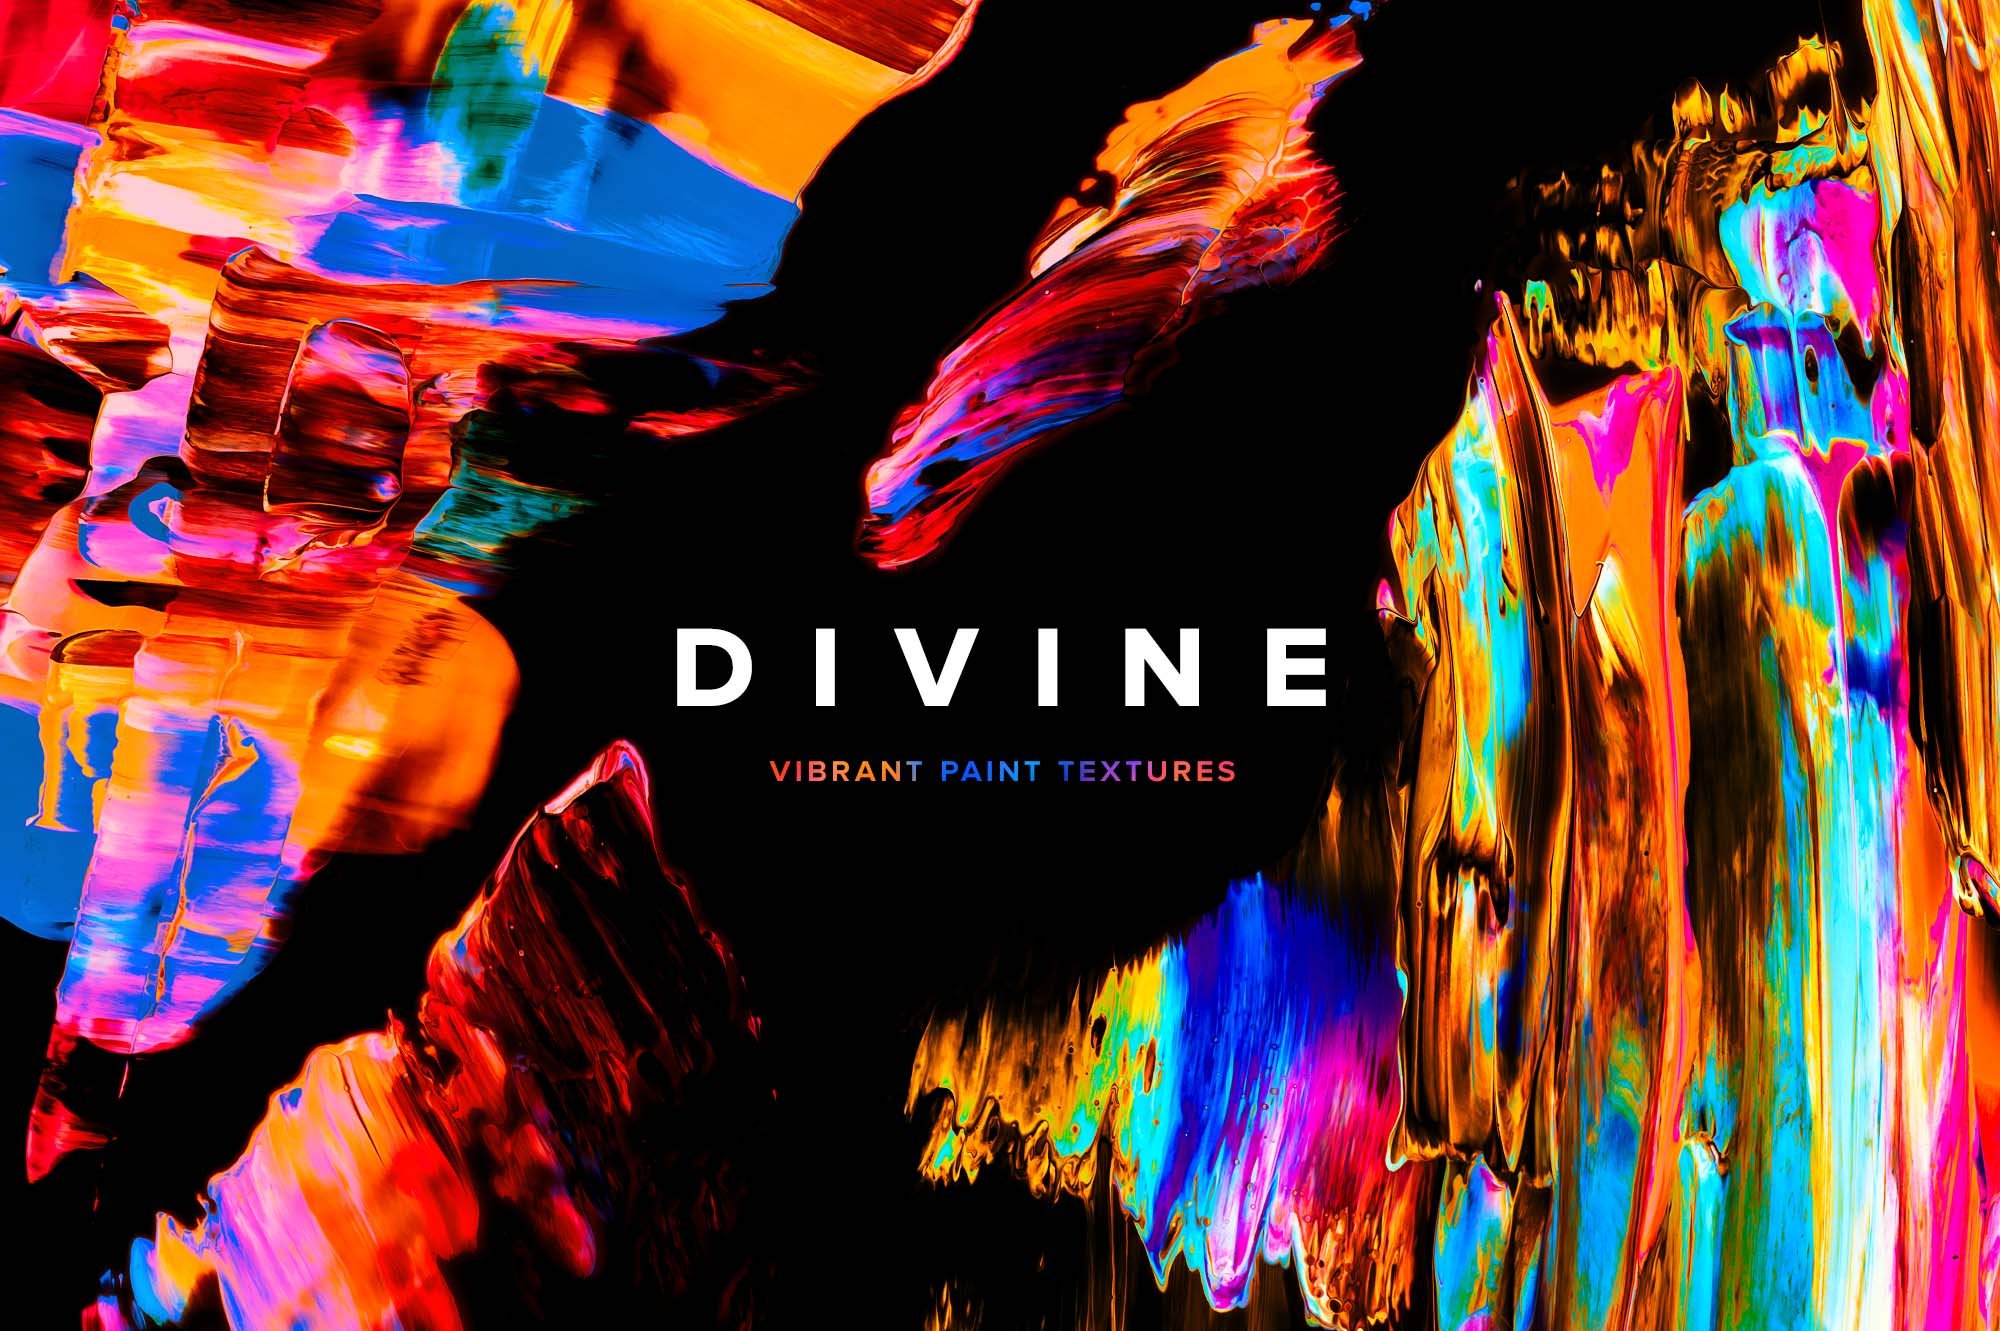 Divine: Vibrant Paint Textures cover image.